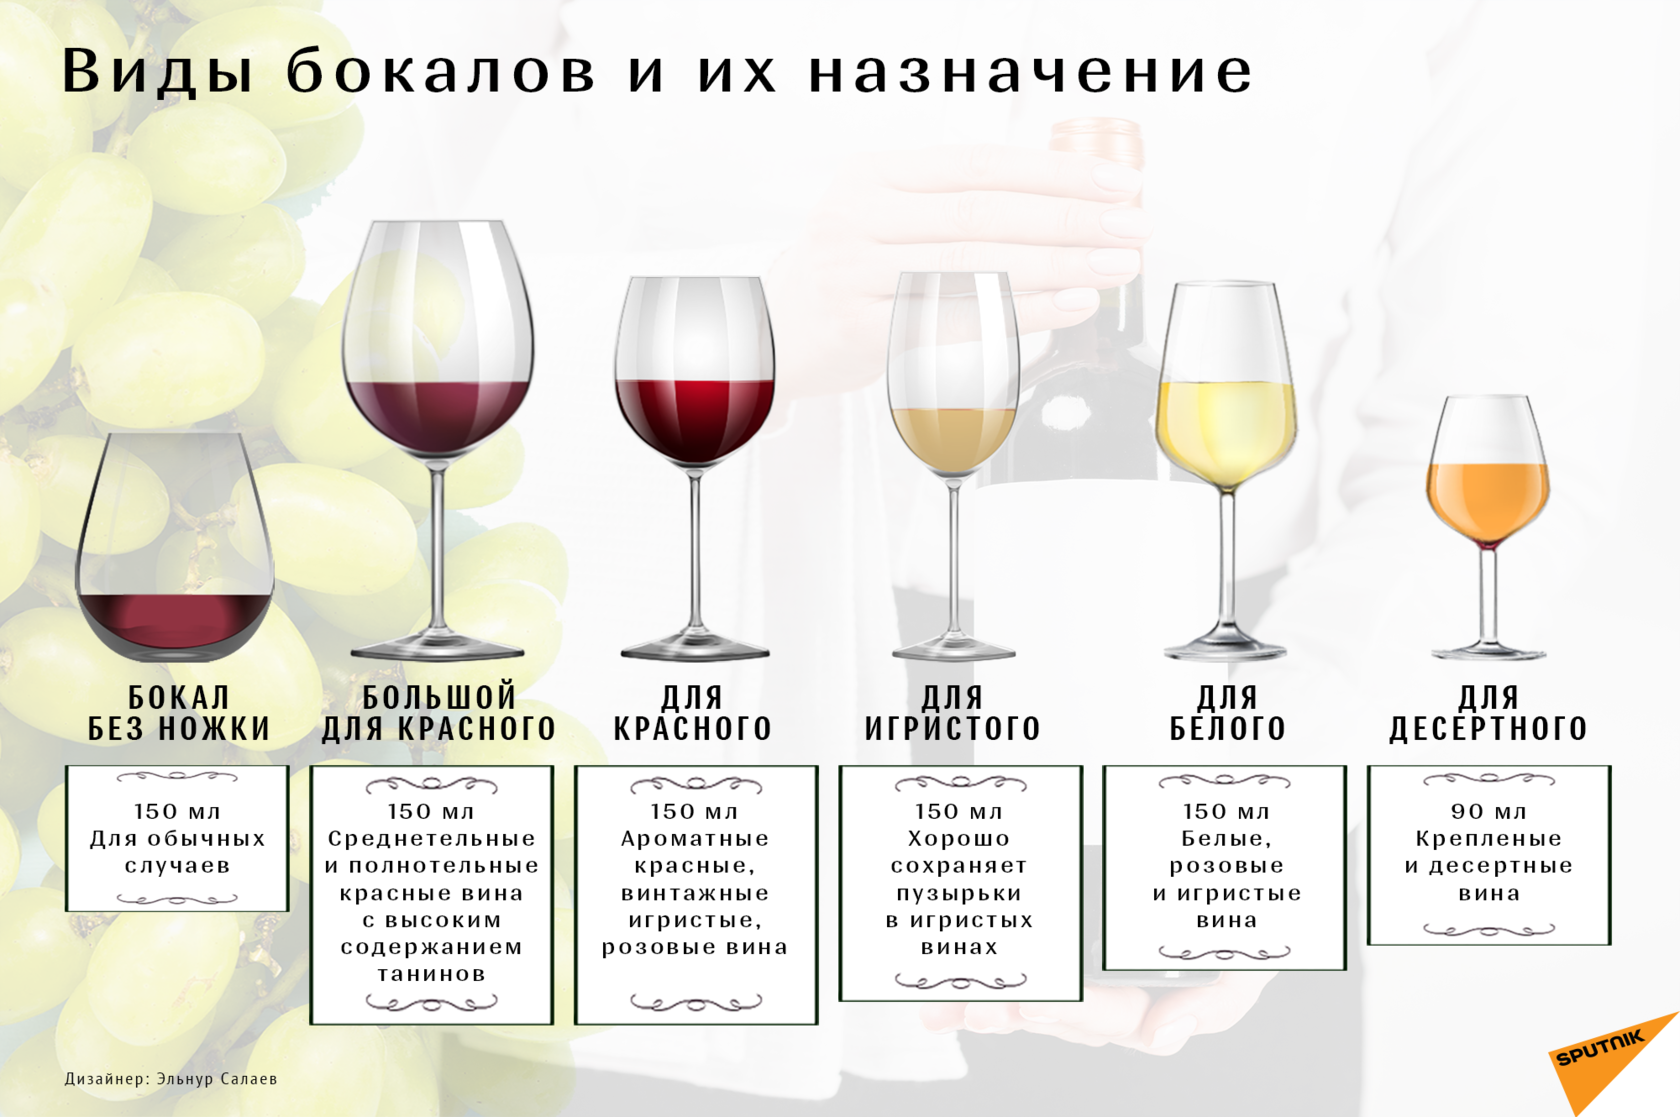 Как правильно декантировать вино – описание процесса и советы